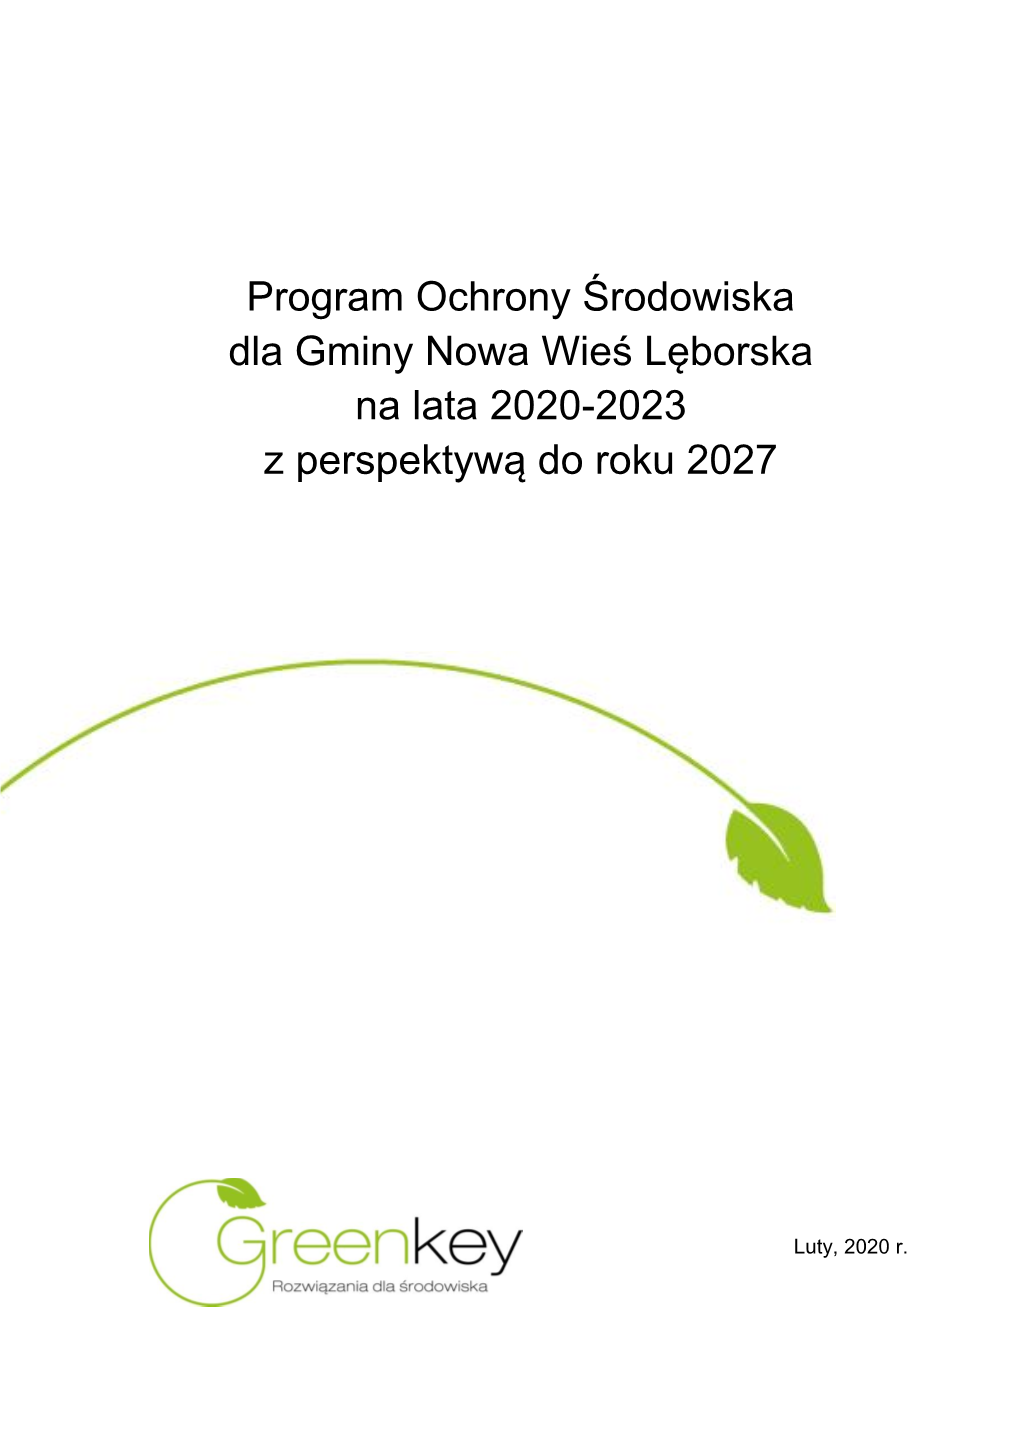 Program Ochrony Środowiska Dla Gminy Nowa Wieś Lęborska Na Lata 2020-2023 Z Perspektywą Do Roku 2027